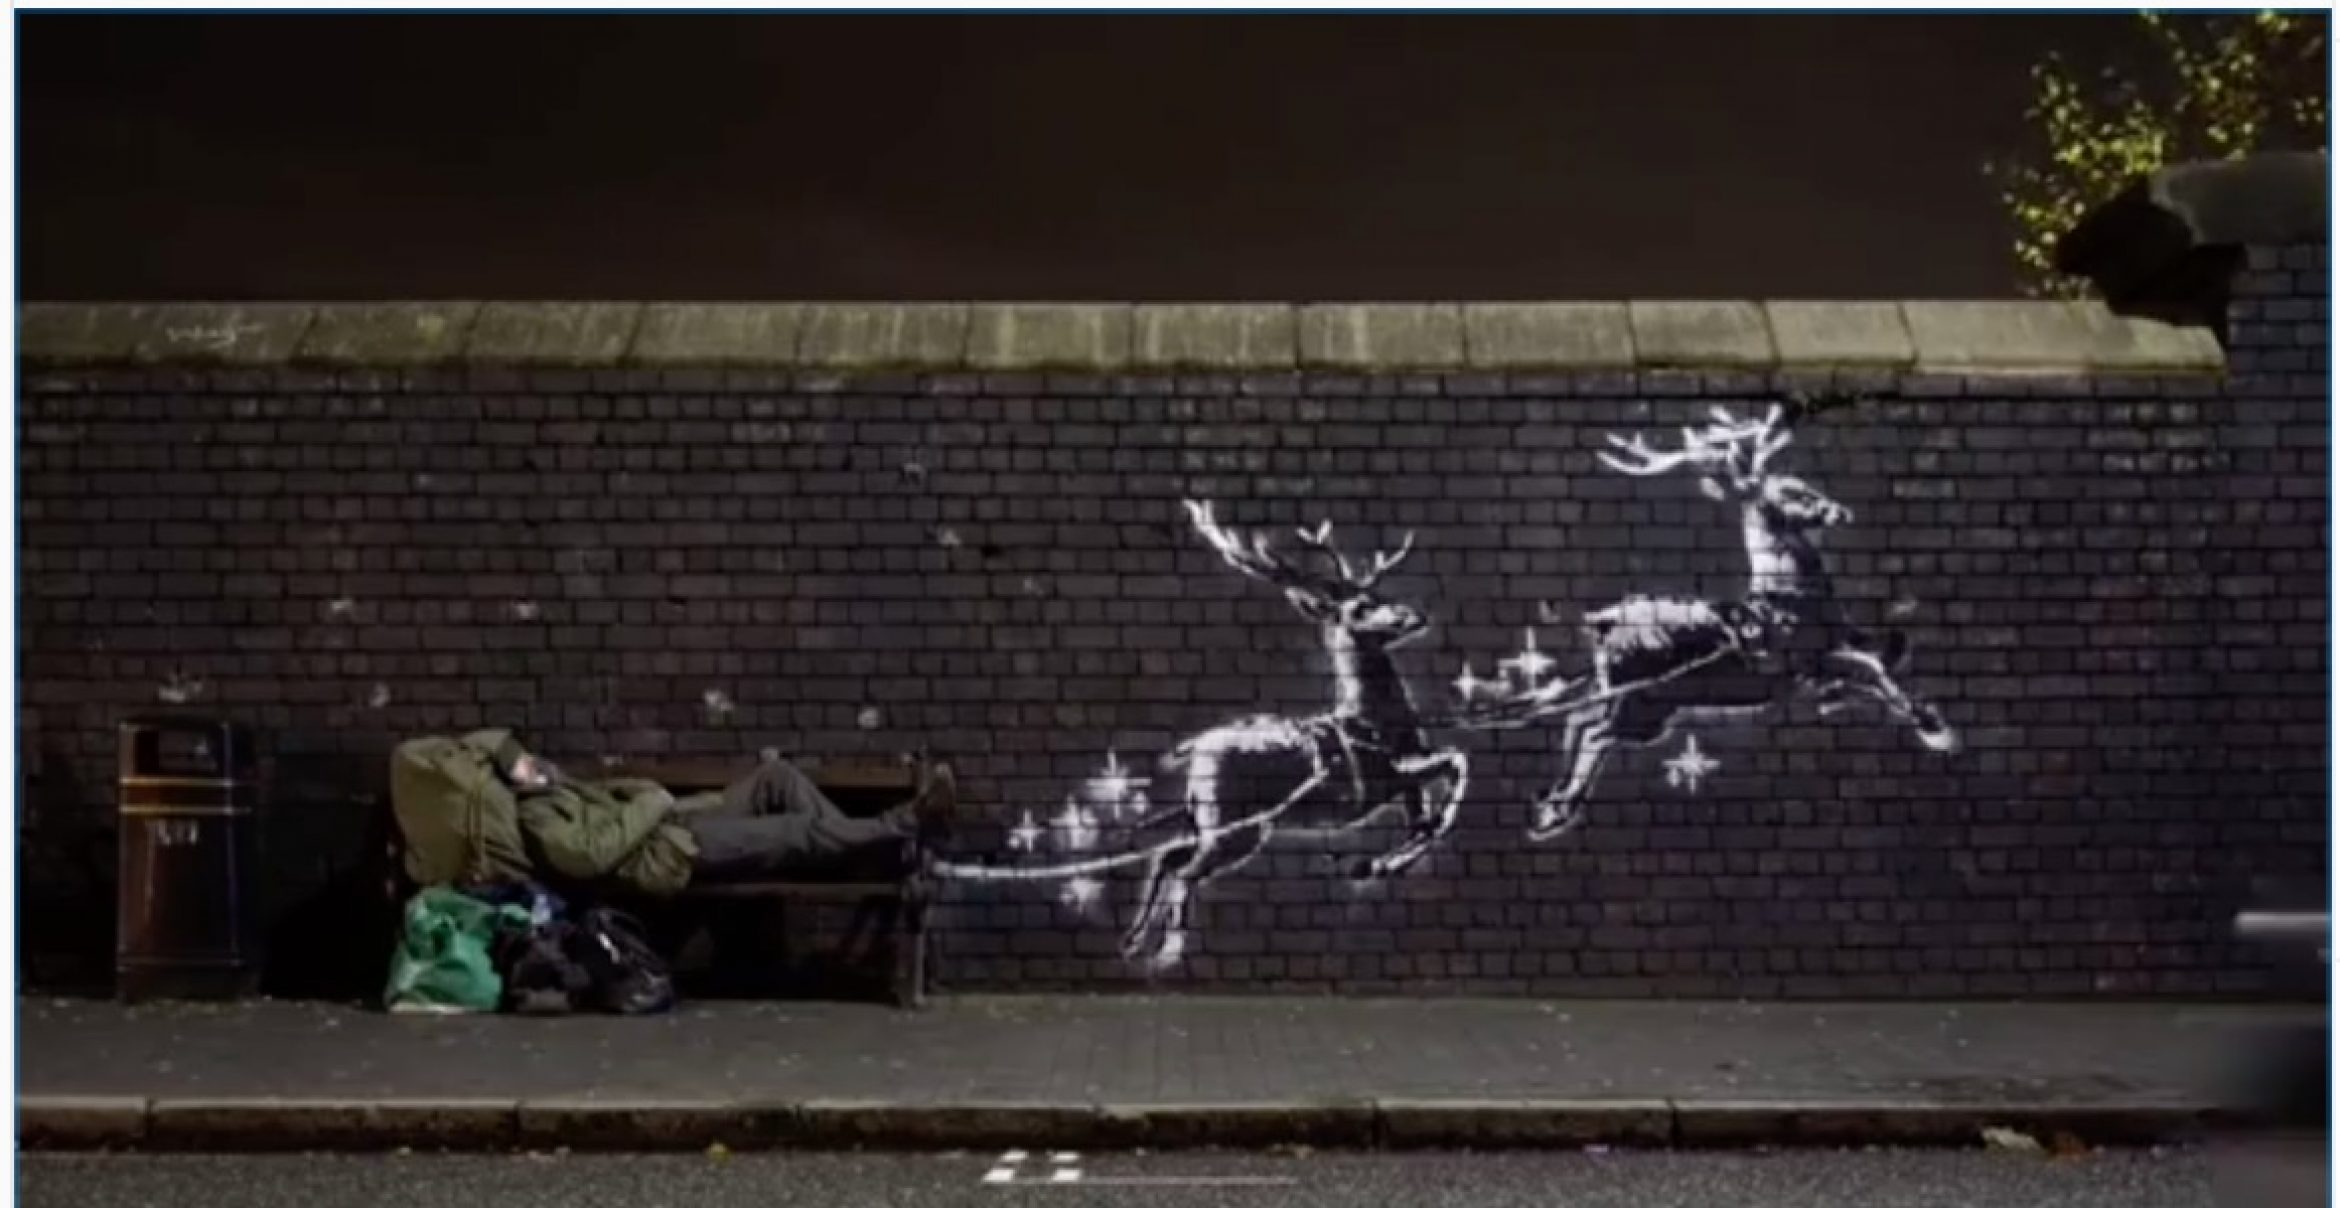 Zur Weihnachtszeit: Banksys neuestes Graffiti macht auf Obdachlose aufmerksam